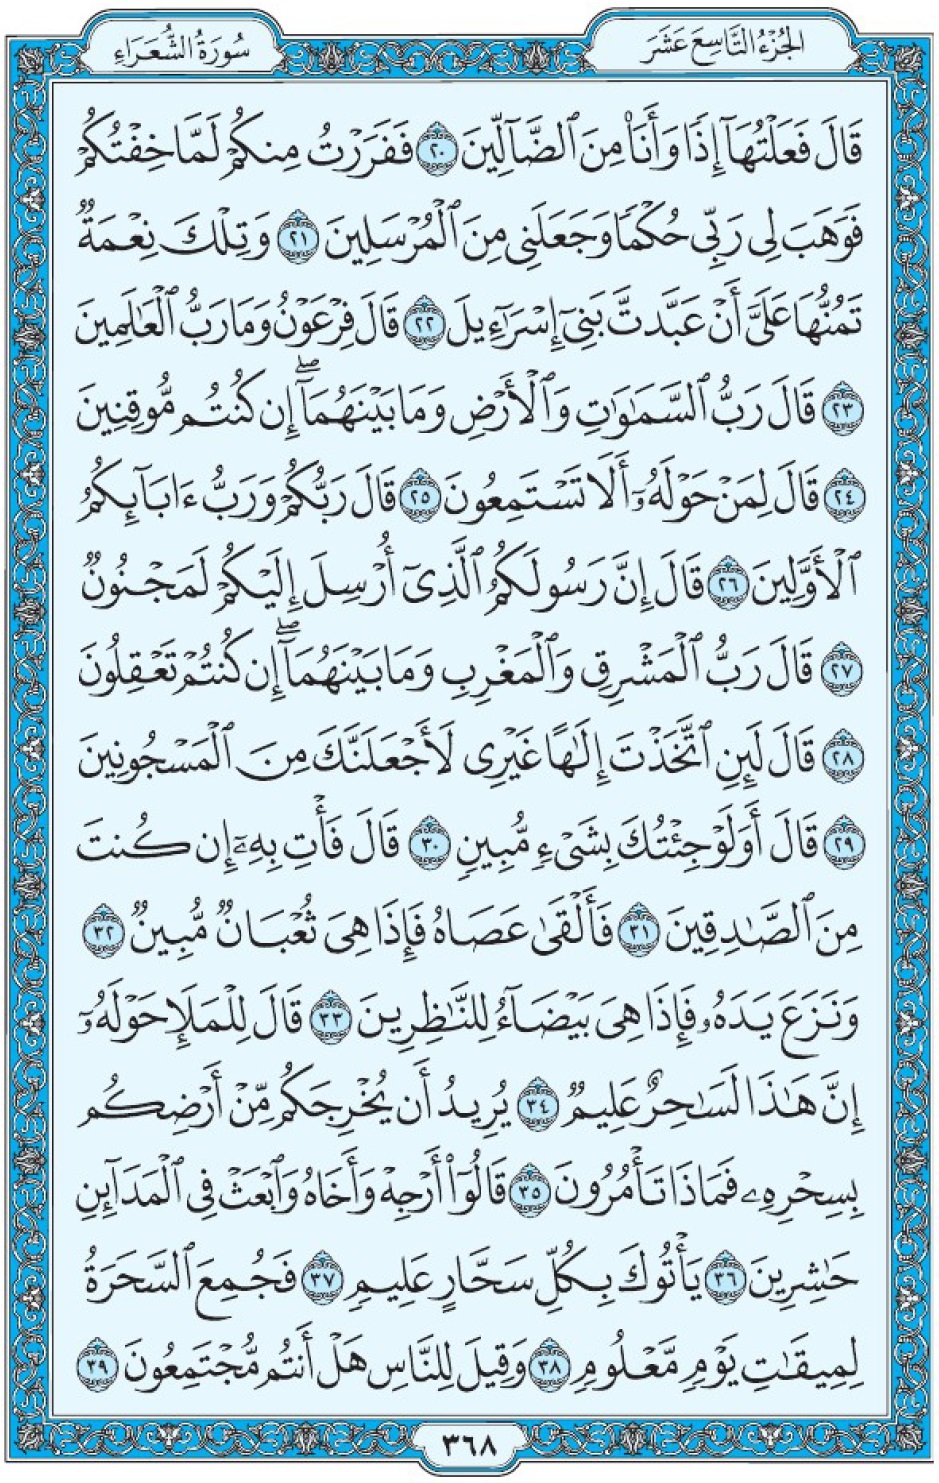 Коран Мединский мусхаф страница 368, Ащ-Щу‘араъ, аят 20-39